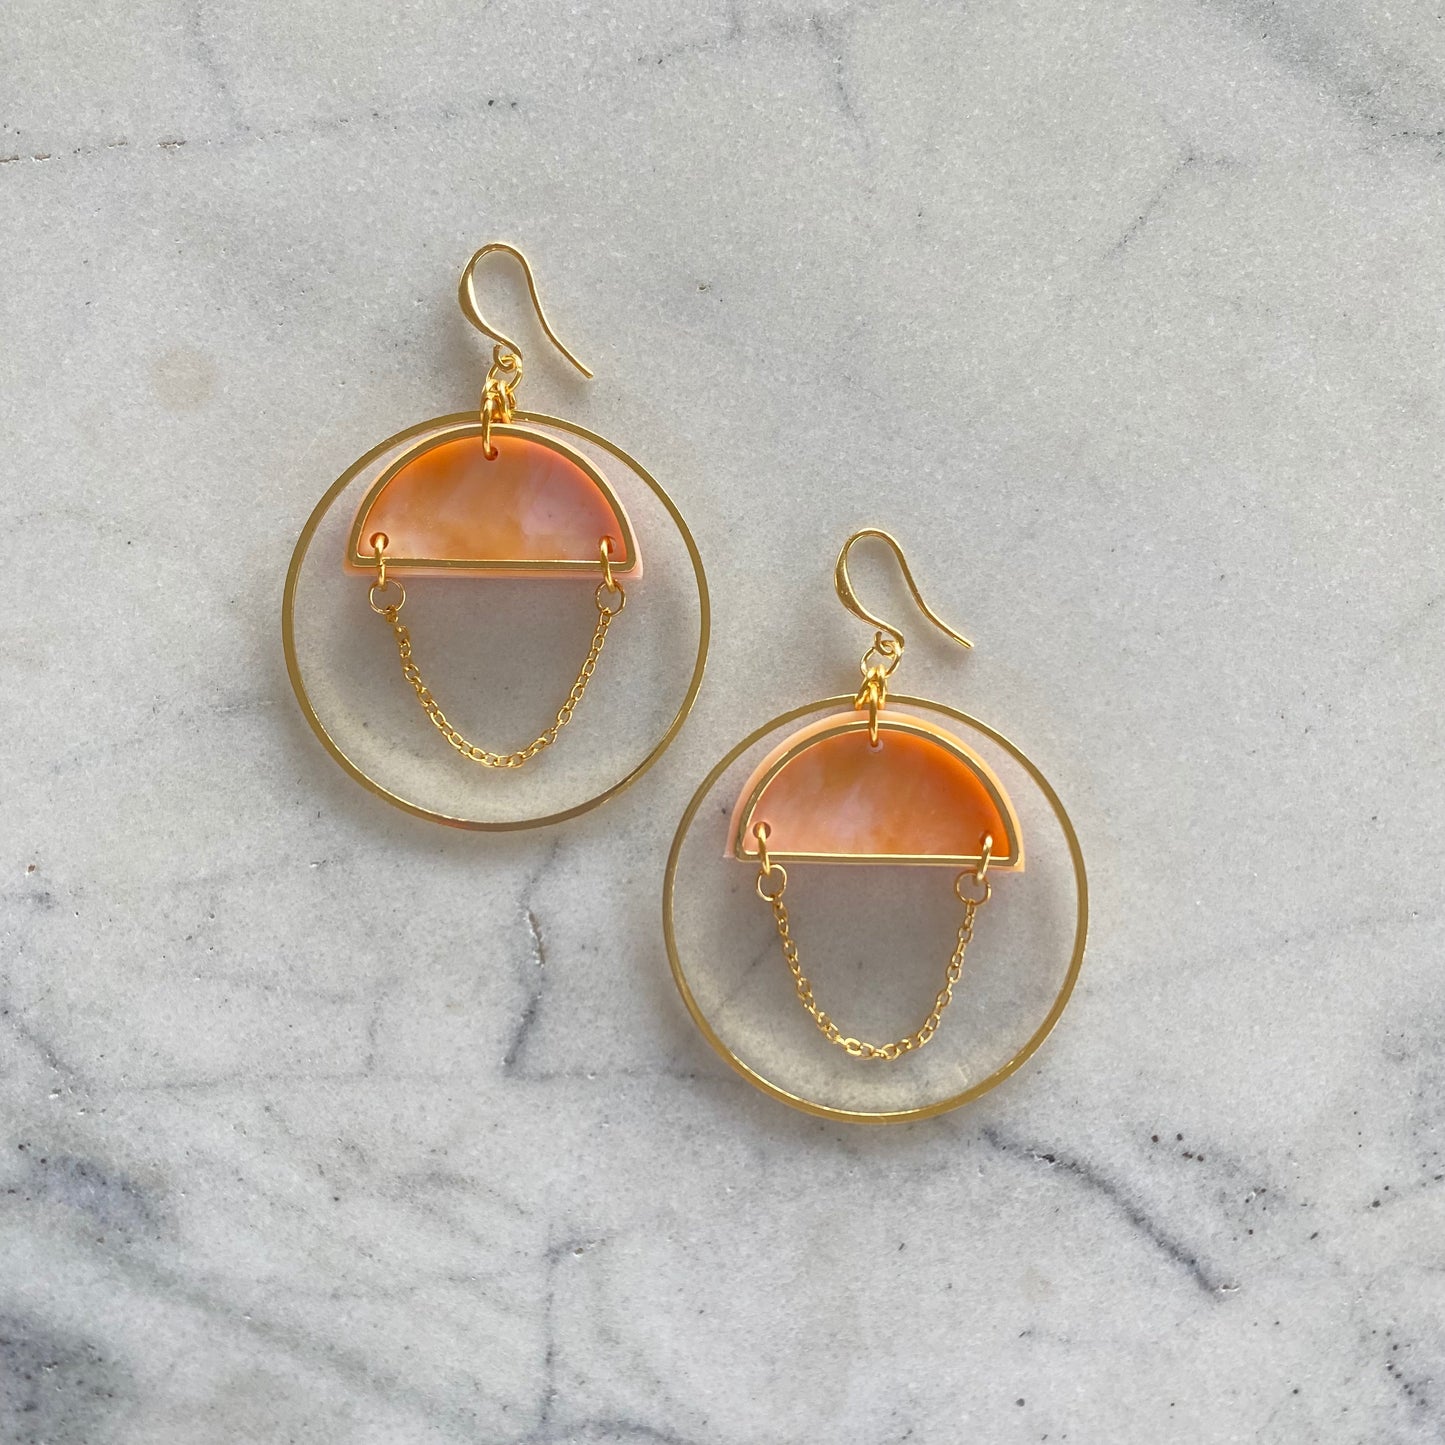 Lunar Sphere Earrings- Peach Agate